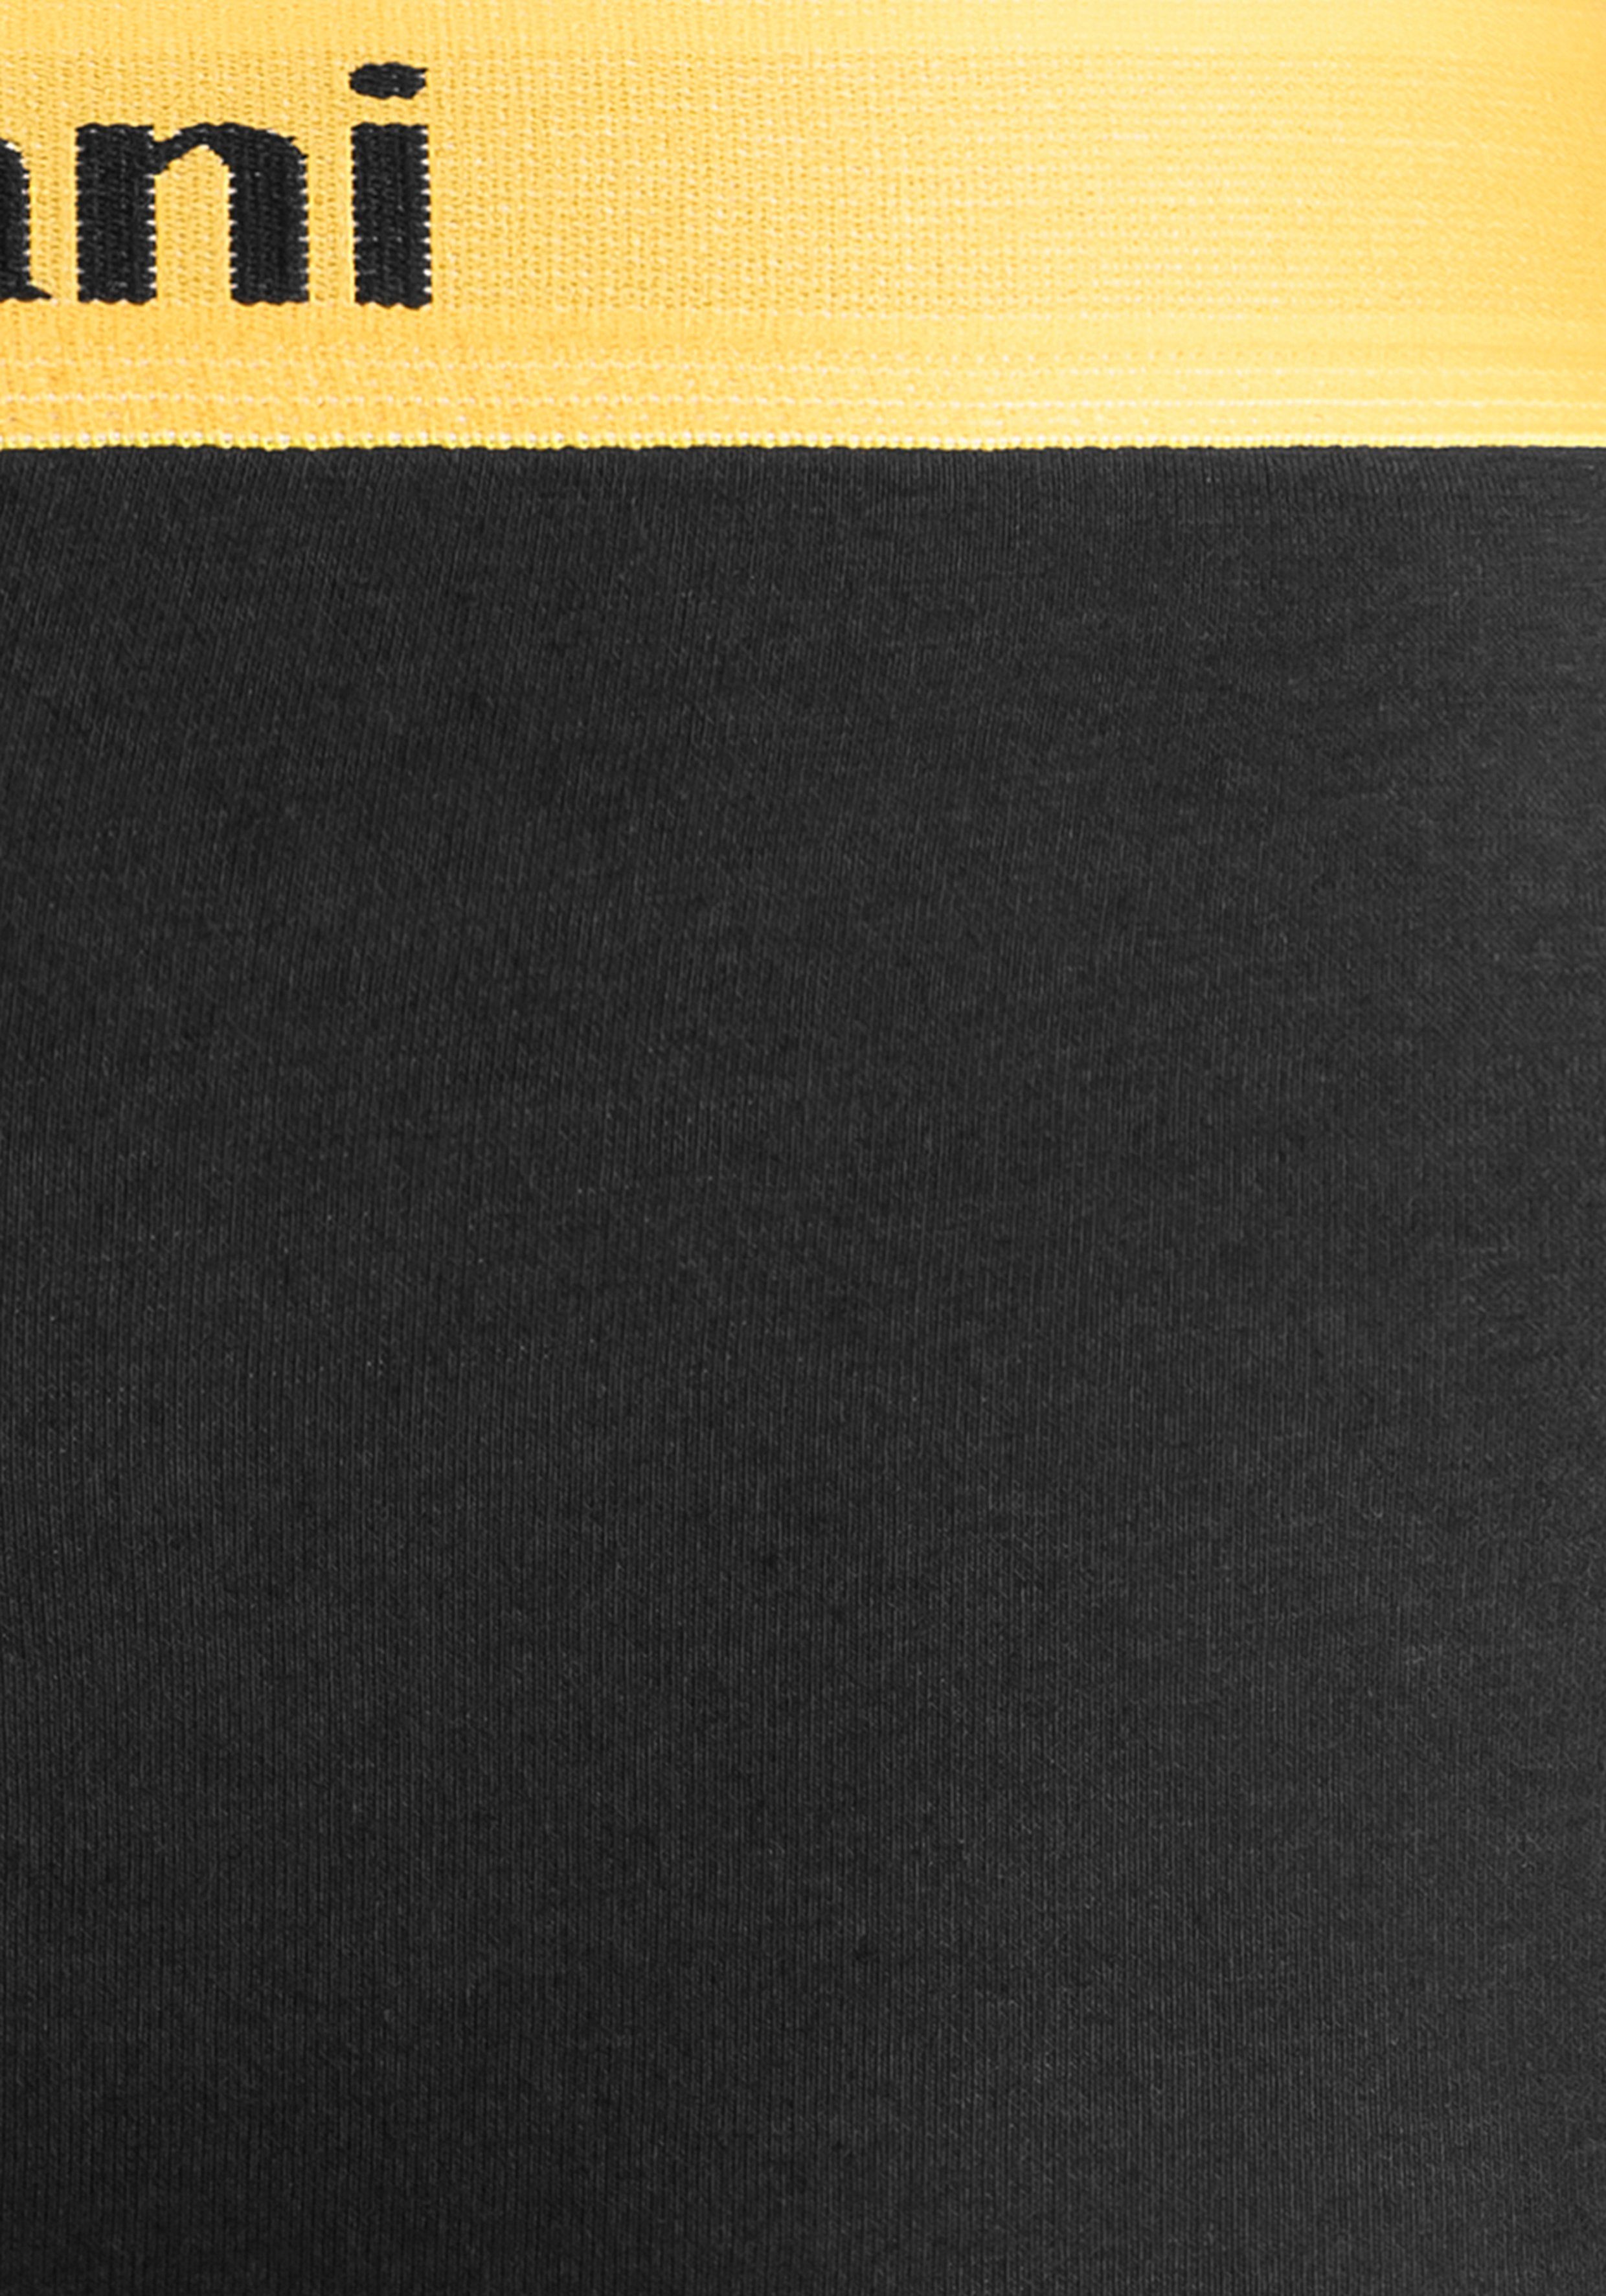 Banani Boxer schwarz-lila Bruno farbigen Marken-Schriftzug schwarz-orange, 4-St) am mit schwarz-türkis, Bündchen schwarz-gelb, (Packung,